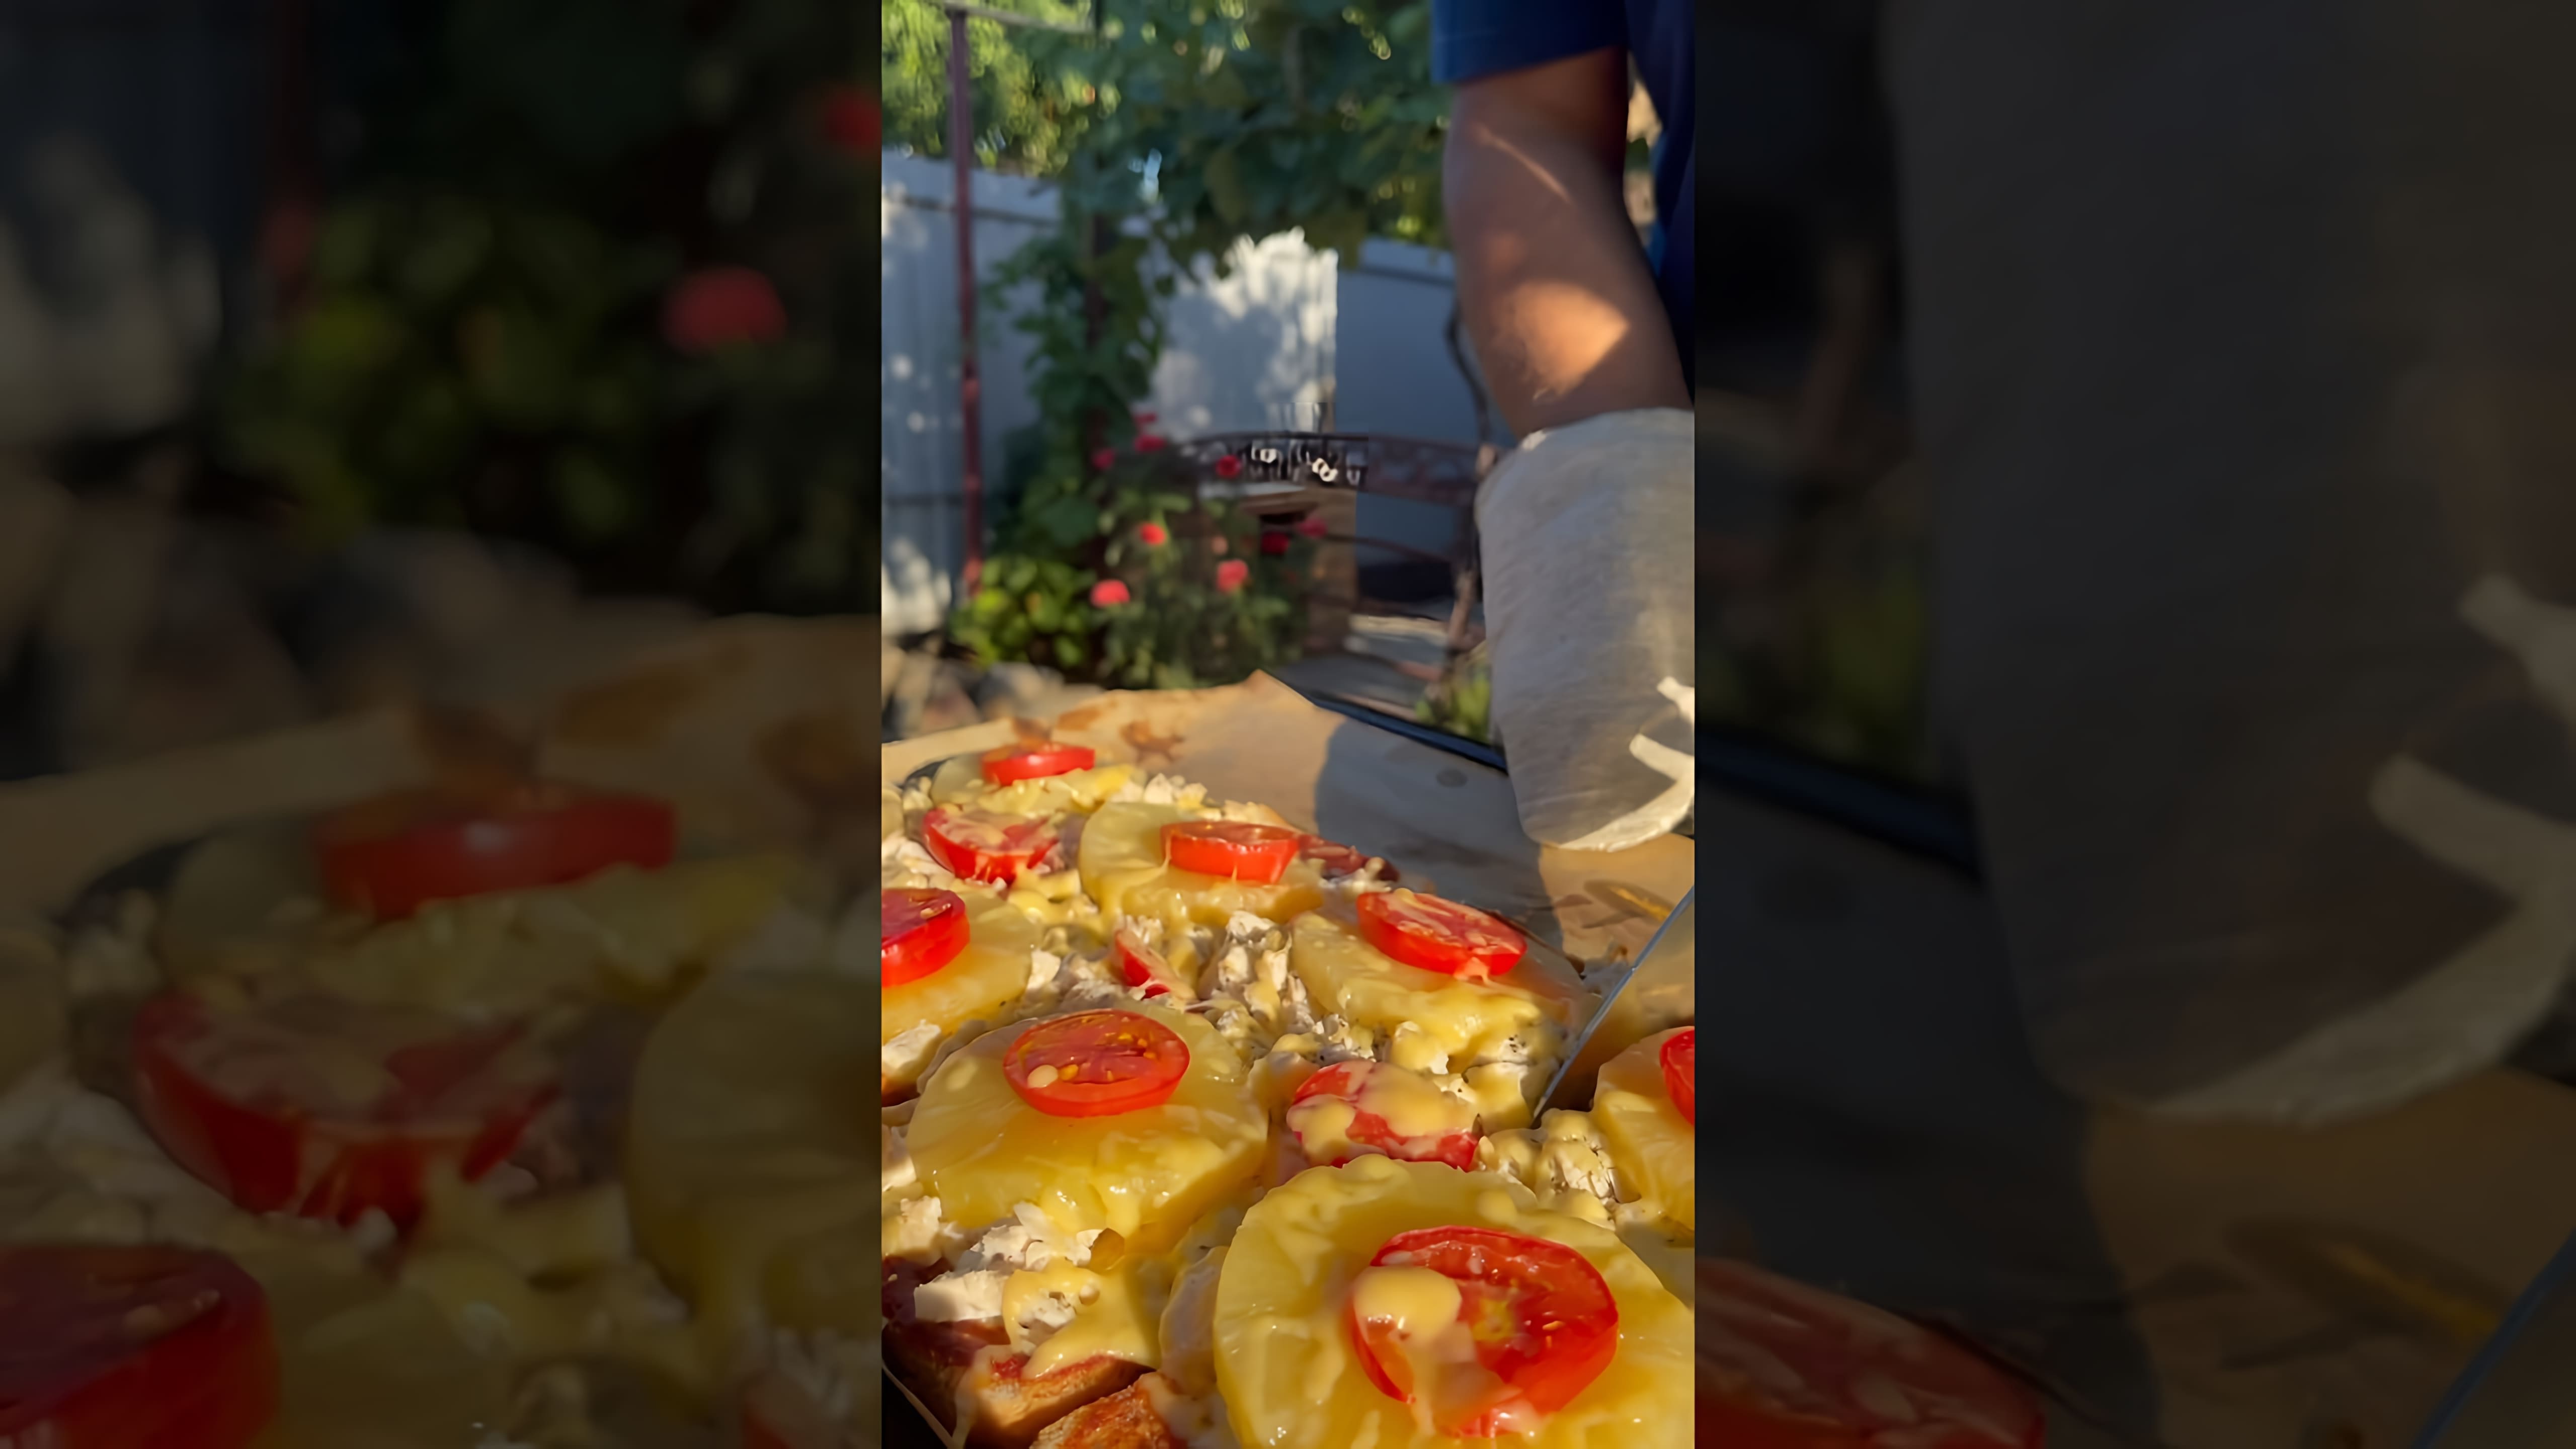 "ПИЦЦА НА ХЛЕБЕ - это реально ВКУСНО?" - это видео-ролик, который показывает, как приготовить пиццу на хлебе